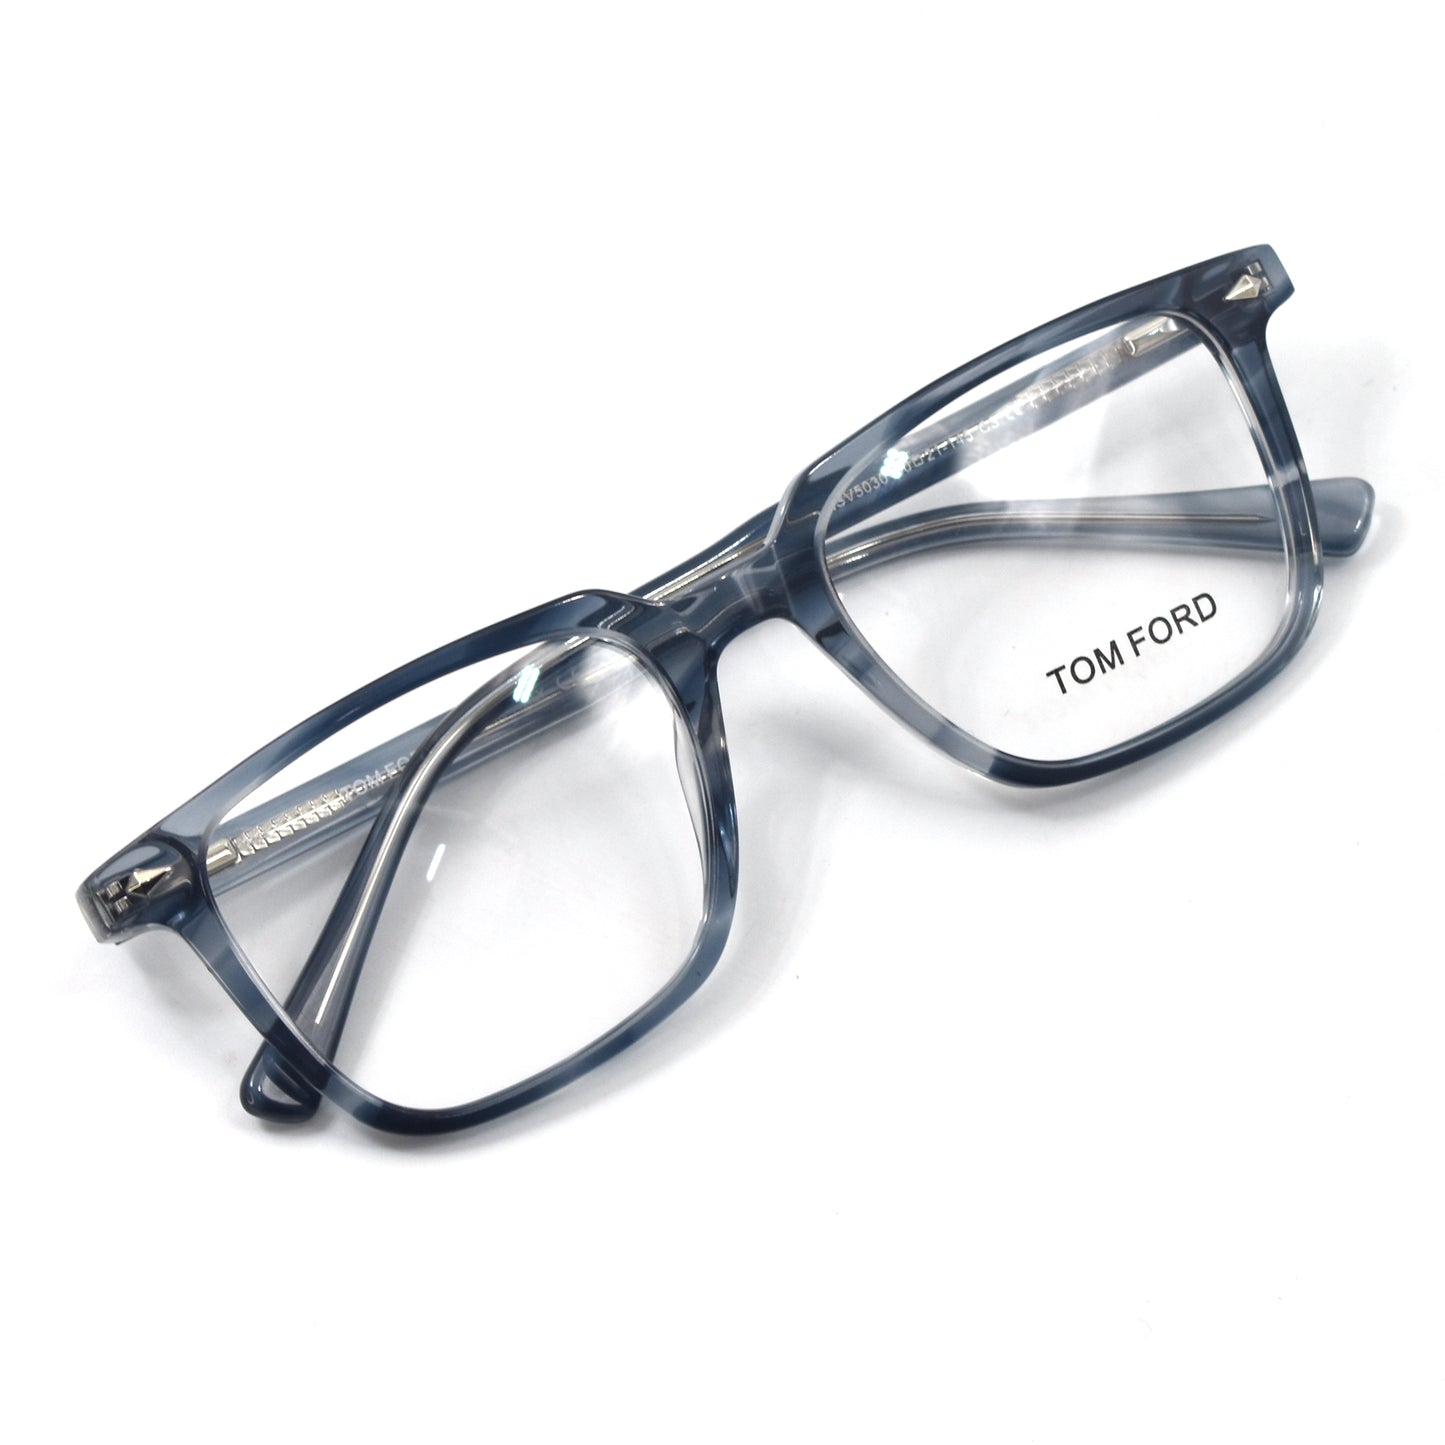 Trendy Stylish Optic Frame | TFord Frame 34 | Premium Quality Eye Glass